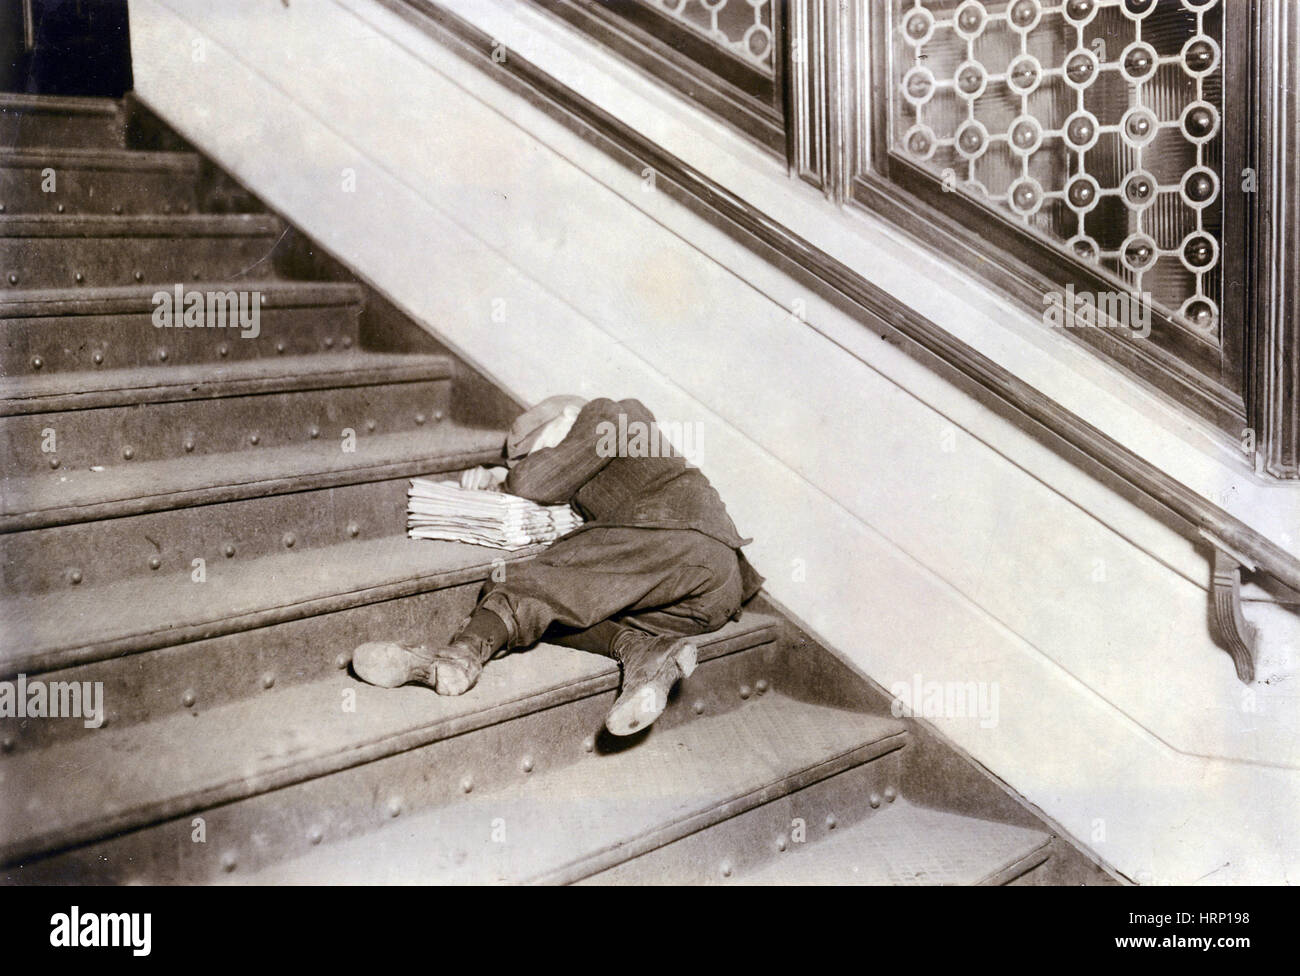 Sleeping Newsboy, Lewis Hine, 1912 Stock Photo